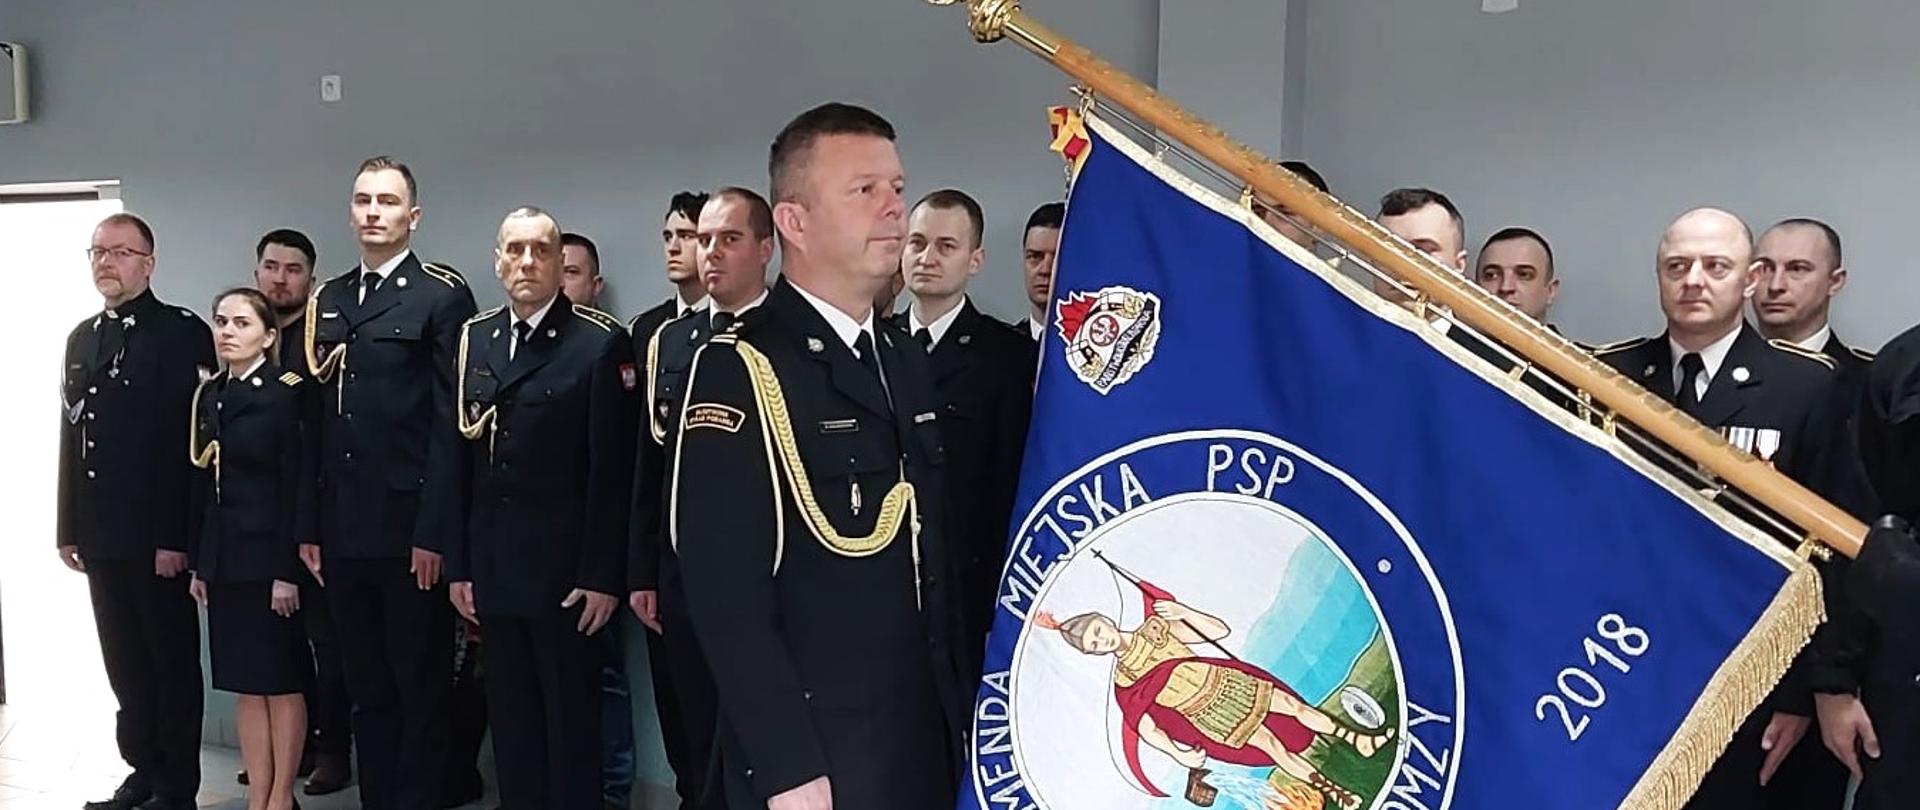 Komendant Miejski PSP w Łomży żegna się ze sztandarem komendy